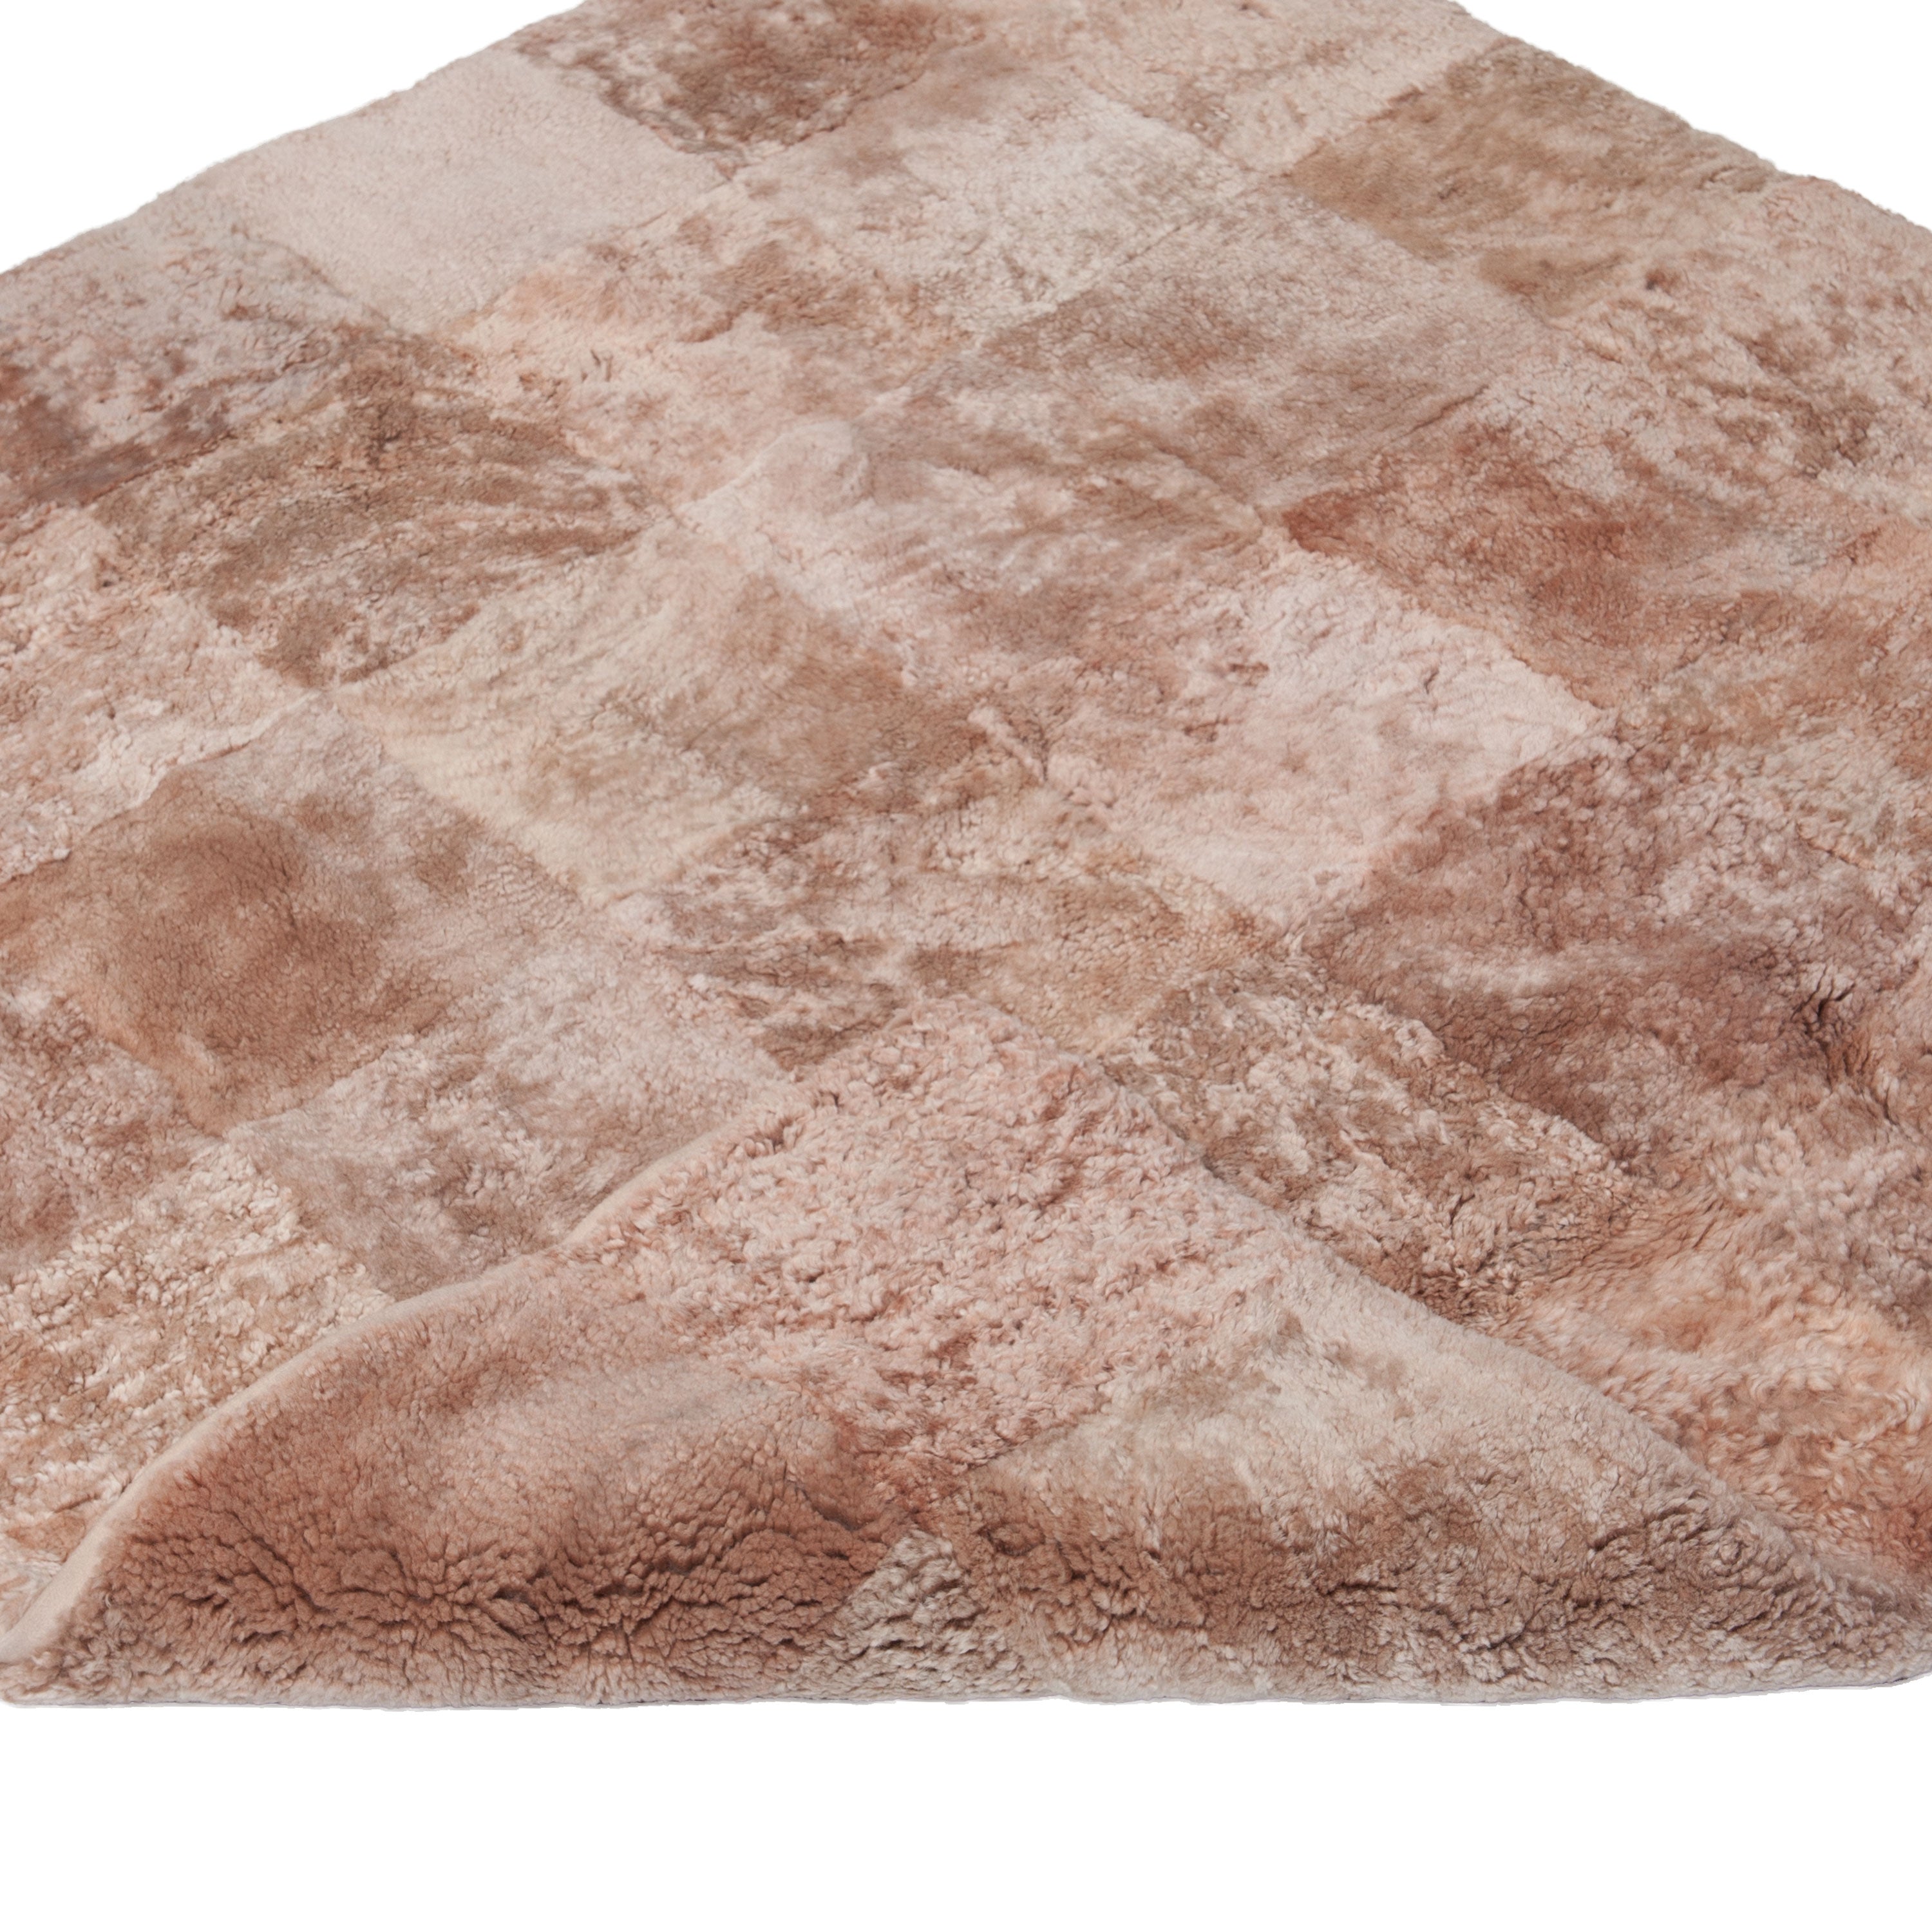 Pink Textured Sheepskin Rug - 4' x 4'